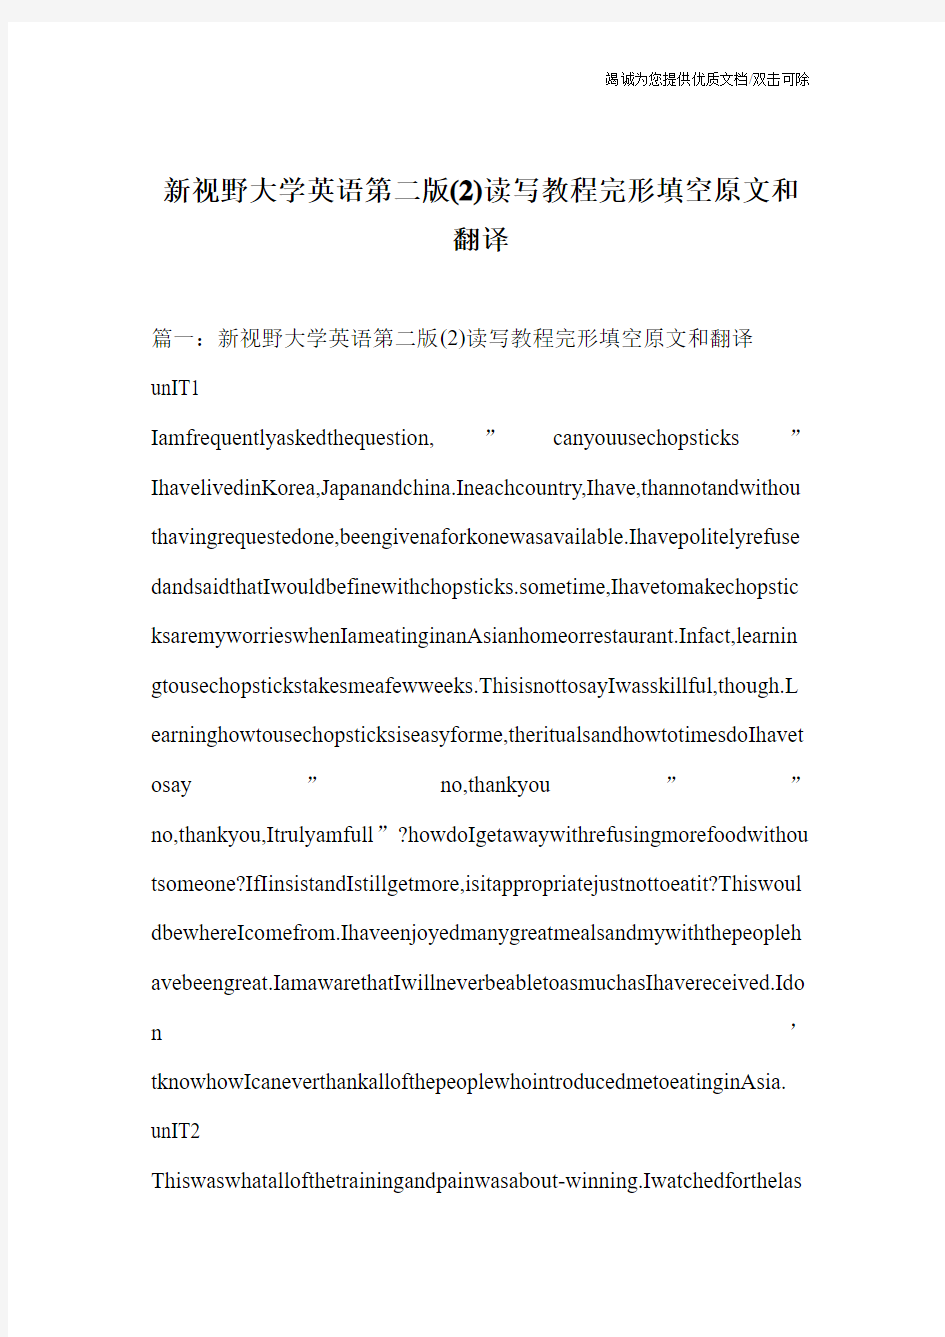 新视野大学英语第二版(2)读写教程完形填空原文和翻译